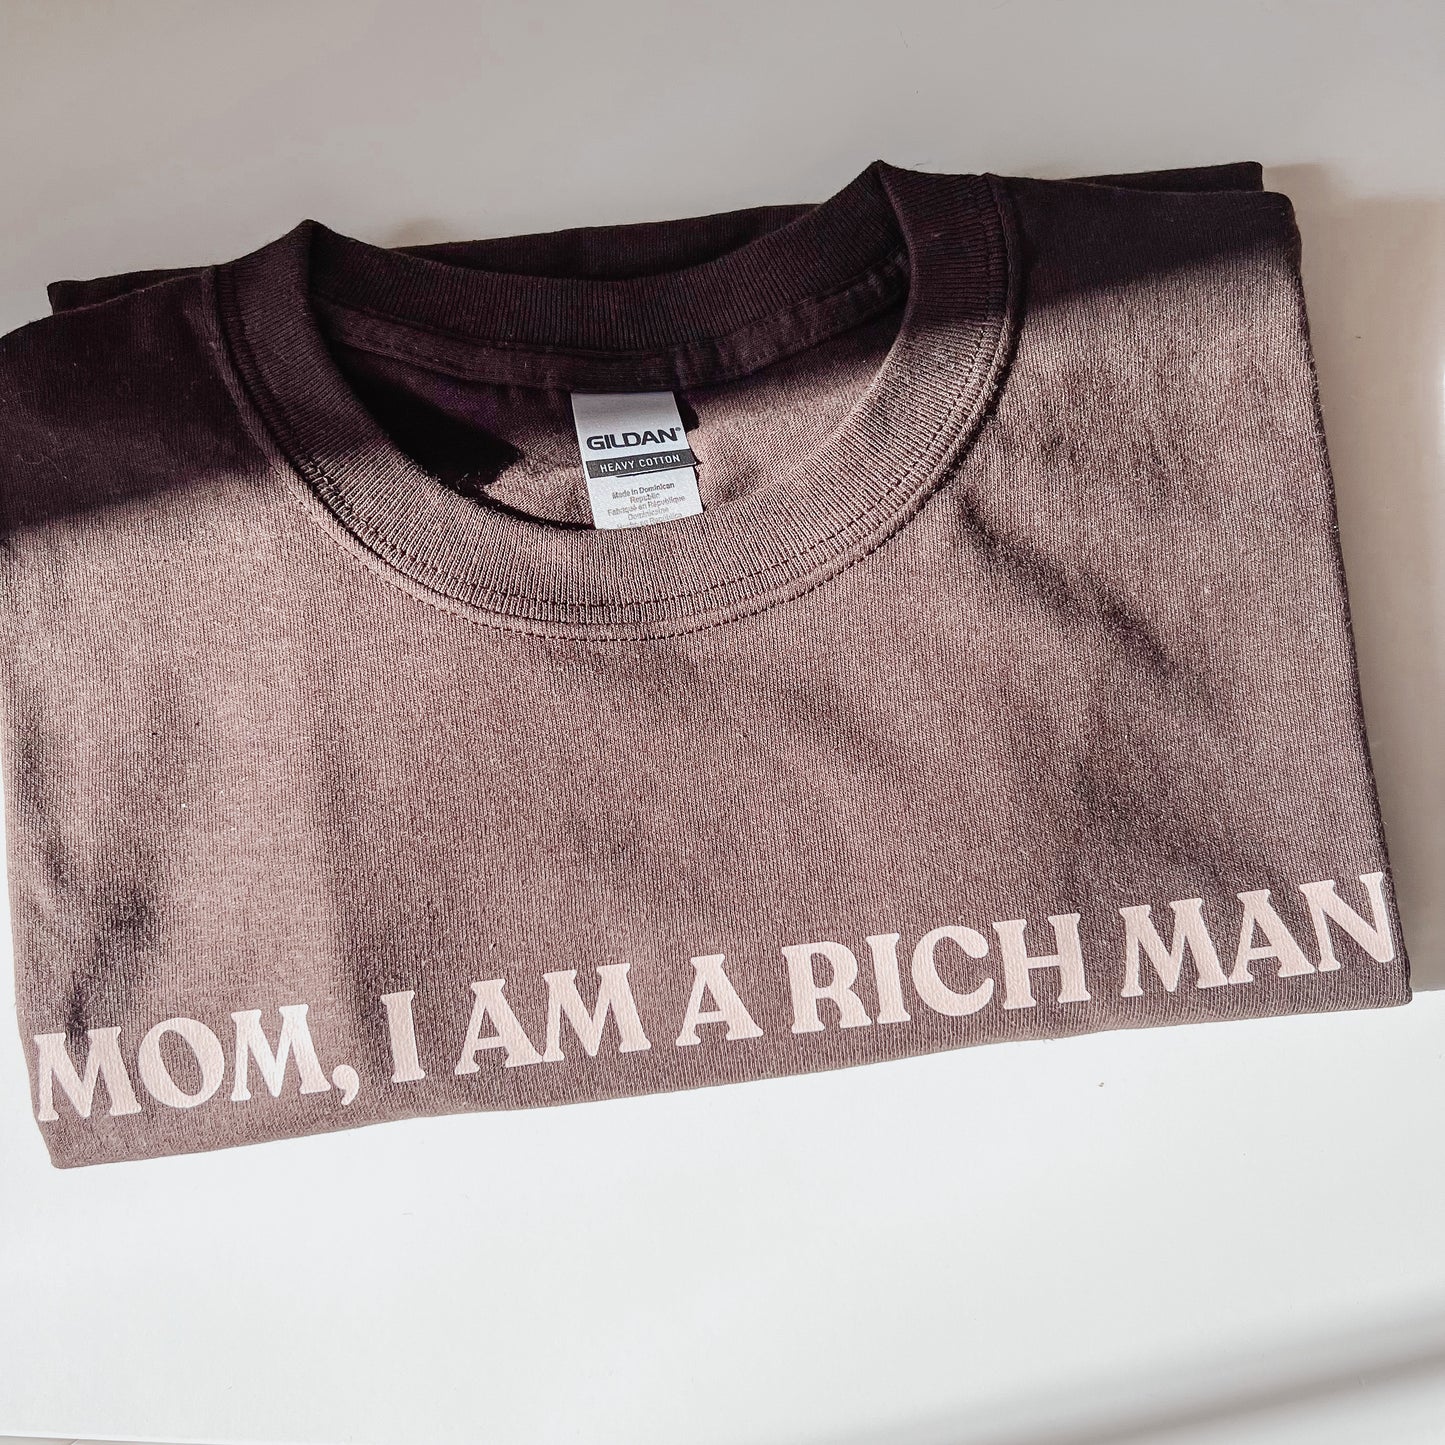 Mom, I Am A Rich Man